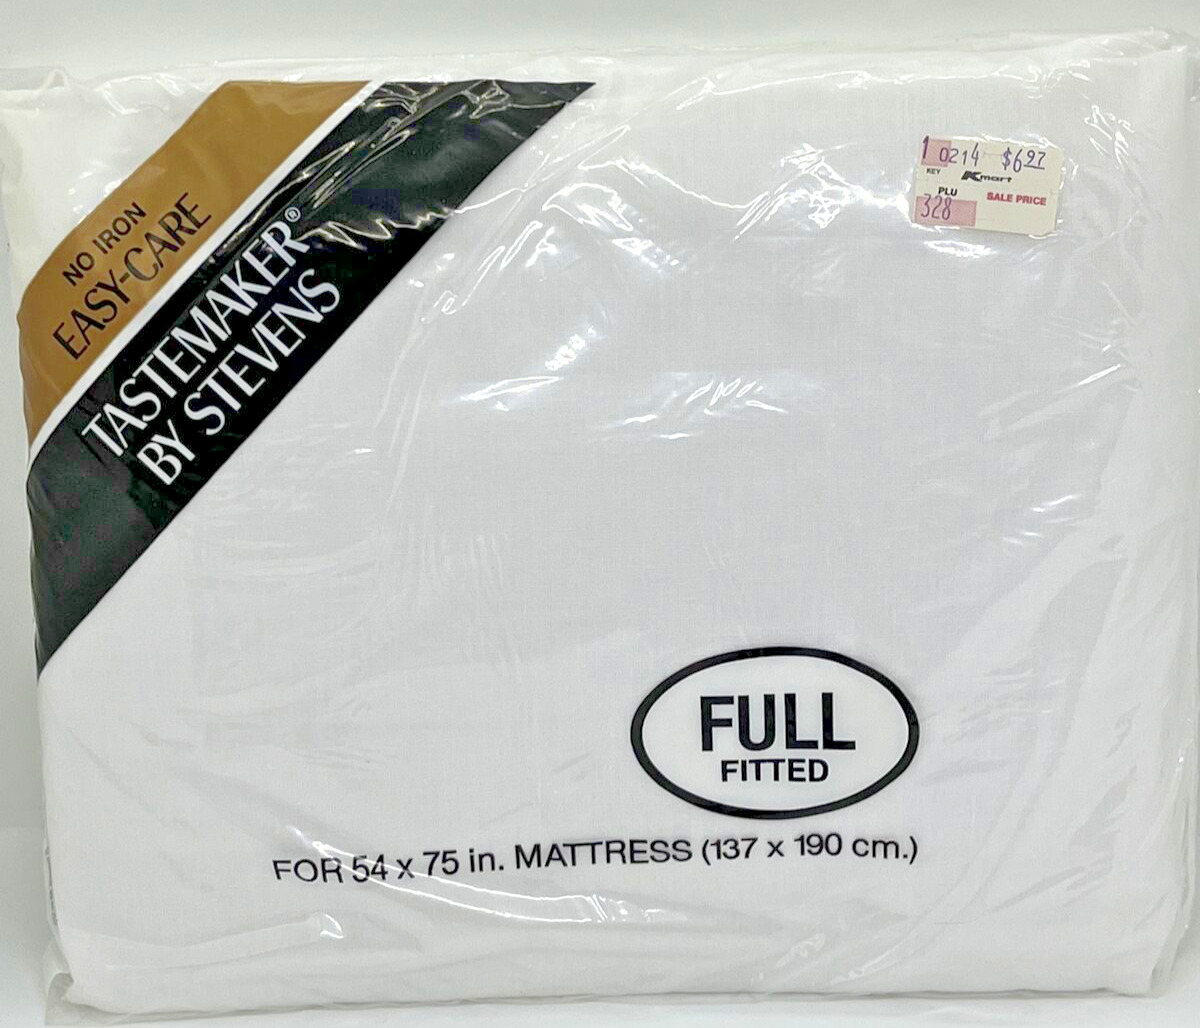 VTG Made USA Full Fitted White Sheet For 54”x75” Mattresses Tastemaker No Iron